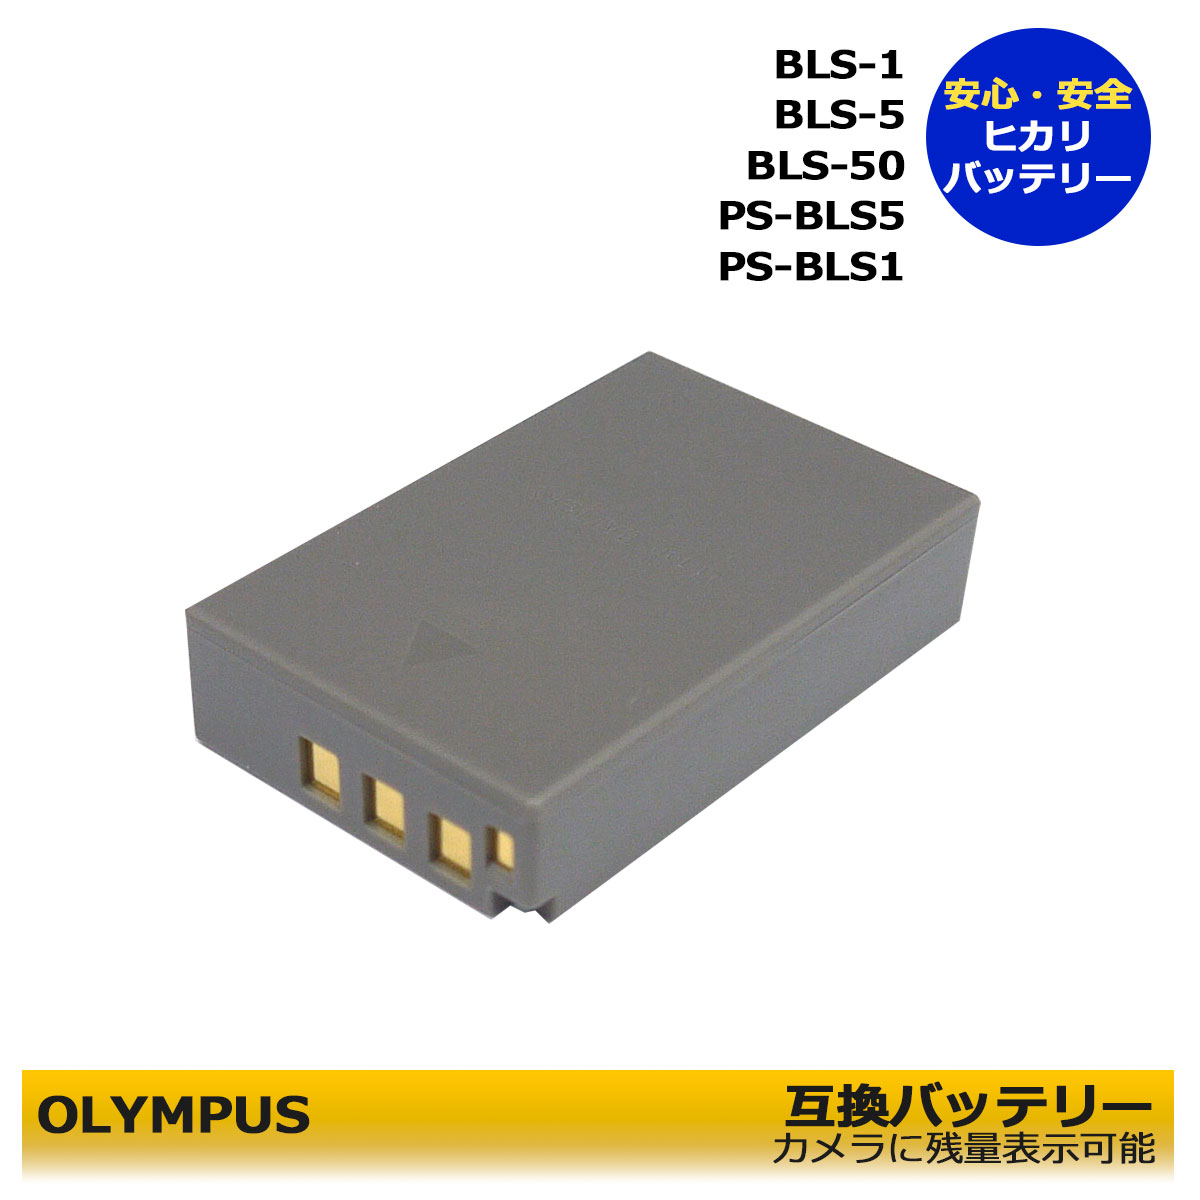 送料無料 BLS-5 / BLS-50 / PS-BLS5 / BLS-1 / PS-BLS1 OLYMPUS 互換バッテリー 1個 PEN E-P1 / E-P2 / E-P3 / E-PL1 / E-PL1s / E-PL2 / E-PL3 / E-PL5 / E-PL6 / E-PL7 / E-PL 10 【カメラ本体に残量表示可能】Stylus 1s E−M10 Mark IV OM SYSTEM OM-5